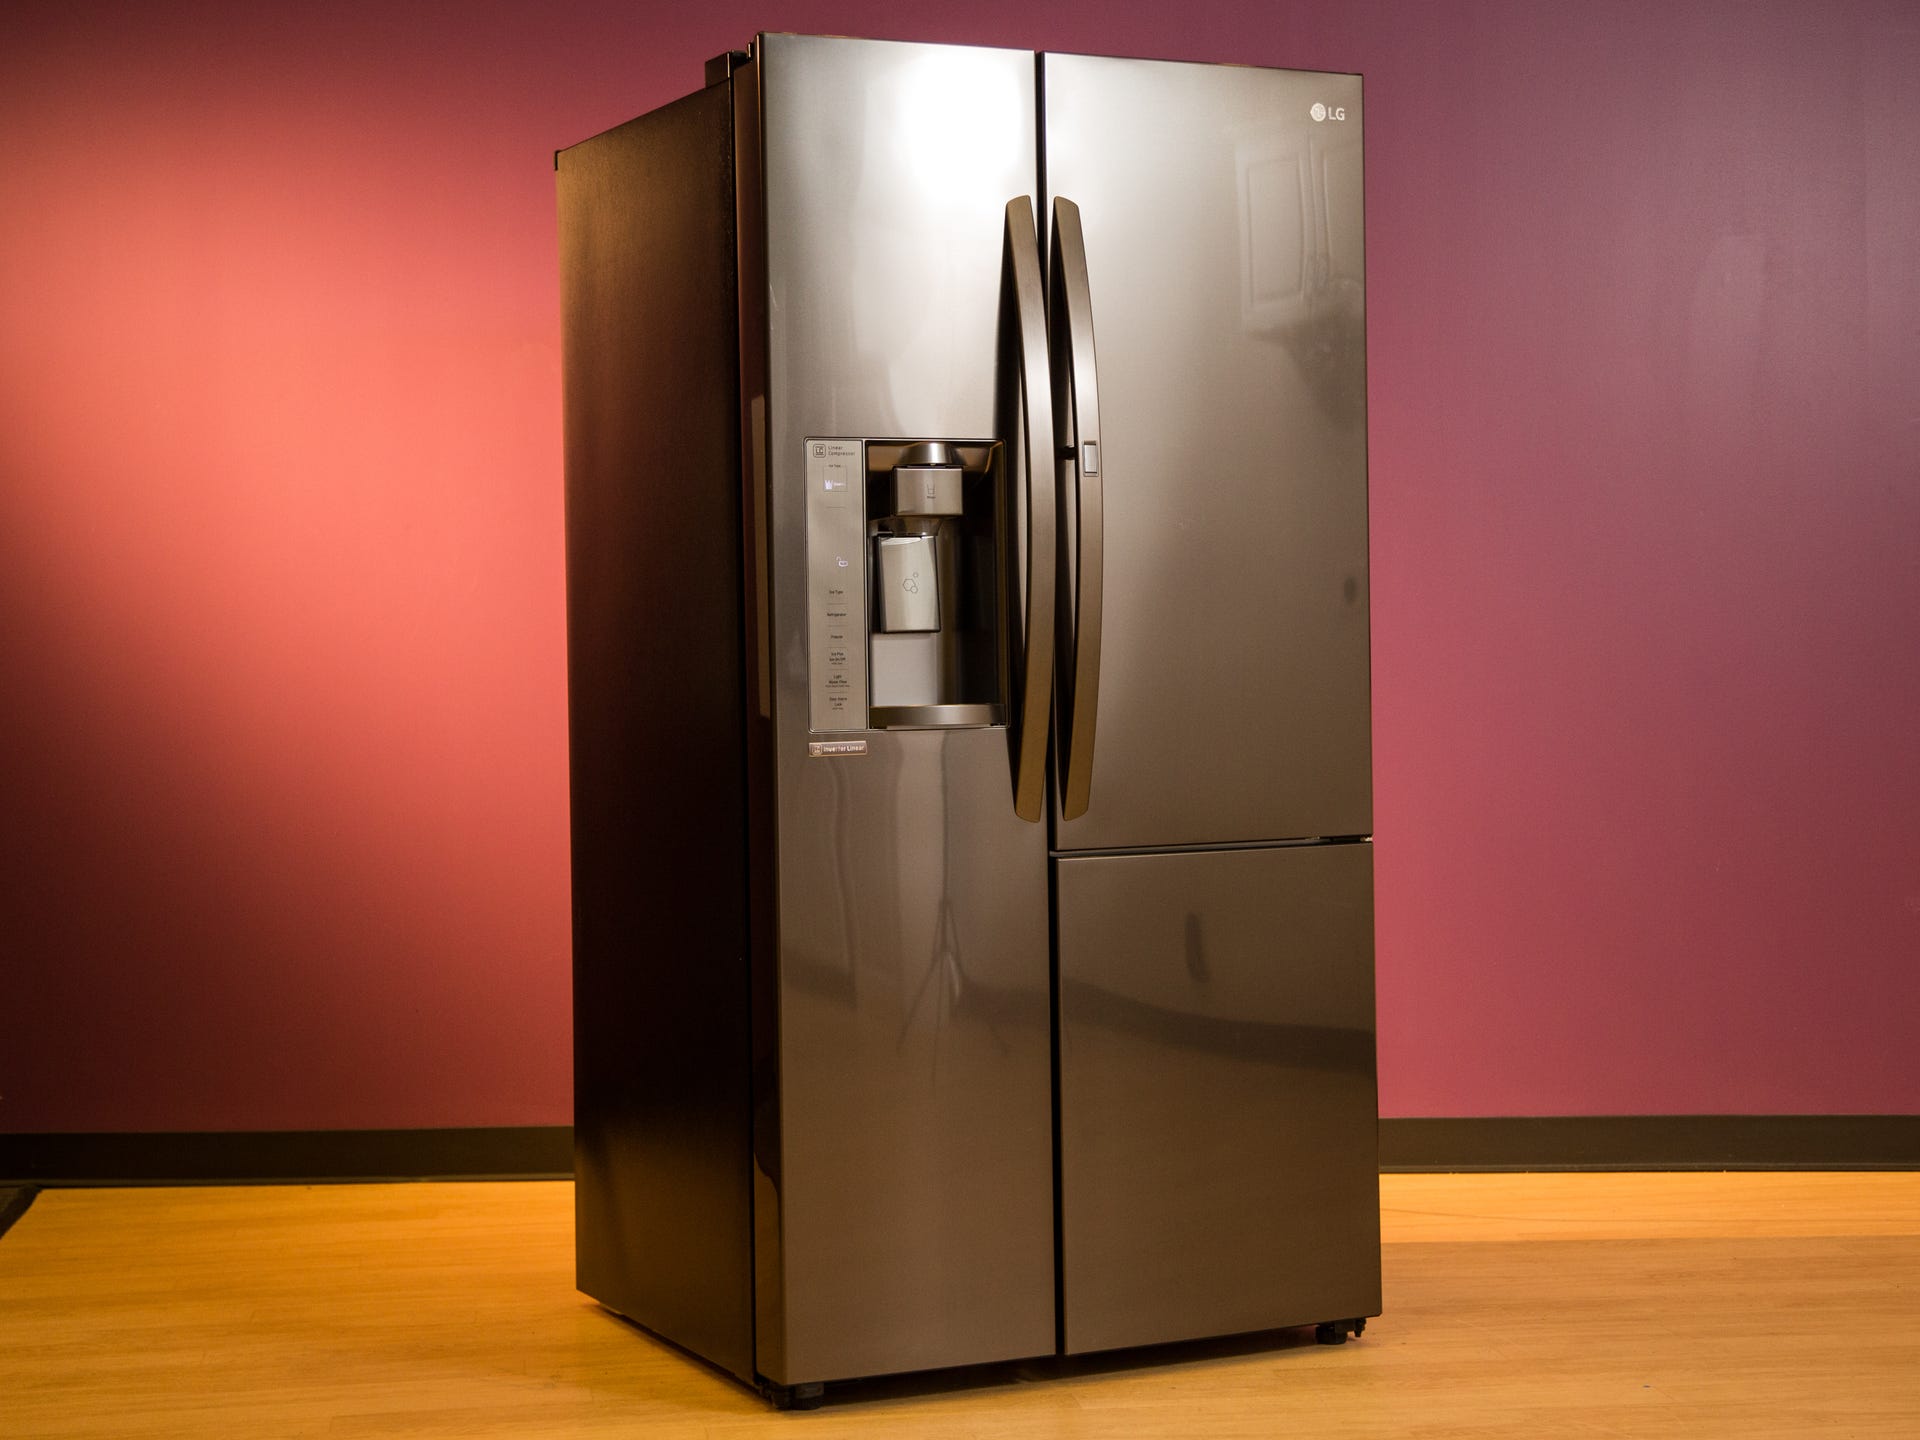 LG LSXS26386D Door-in-Door Side-by-Side Refrigerator review: Clunky  execution from this LG Door-in-Door fridge - CNET